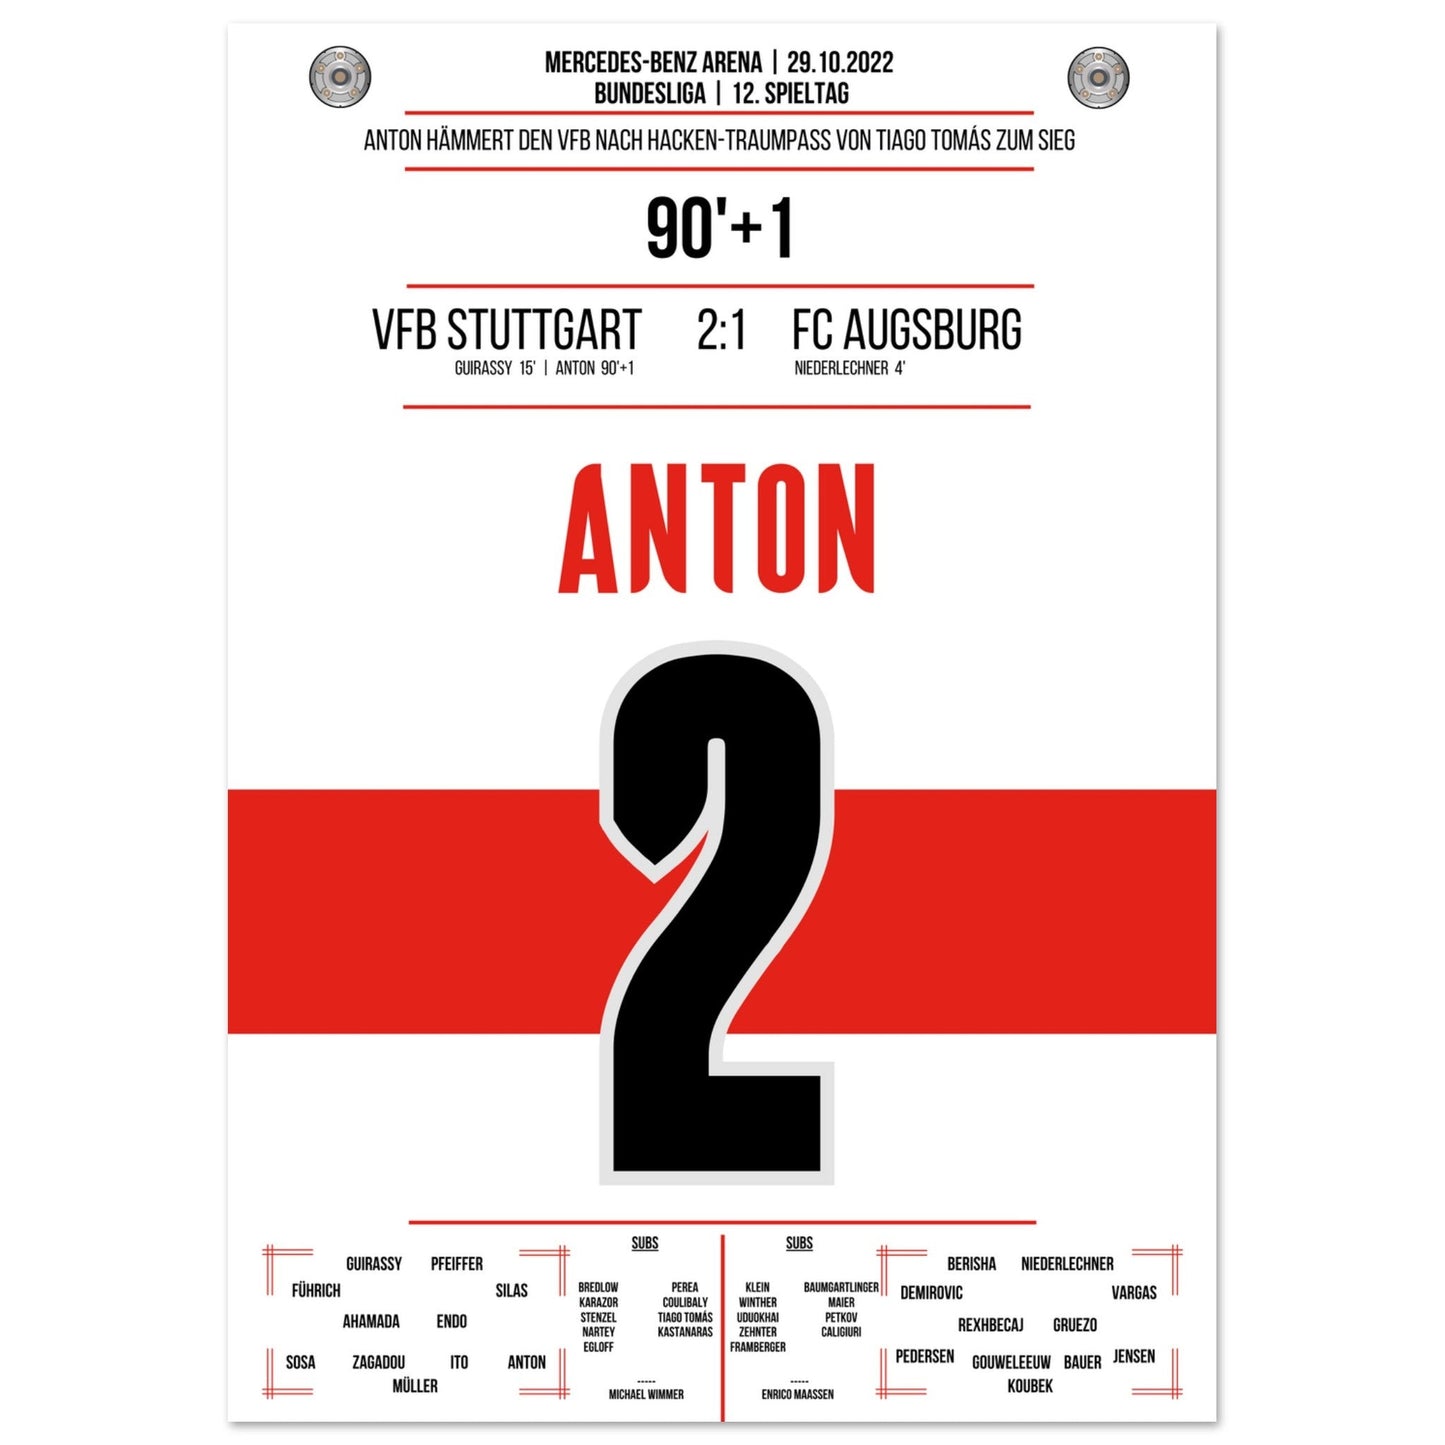 Anton hämmert den VFB mit Krampf zum Sieg gegen Augsburg 